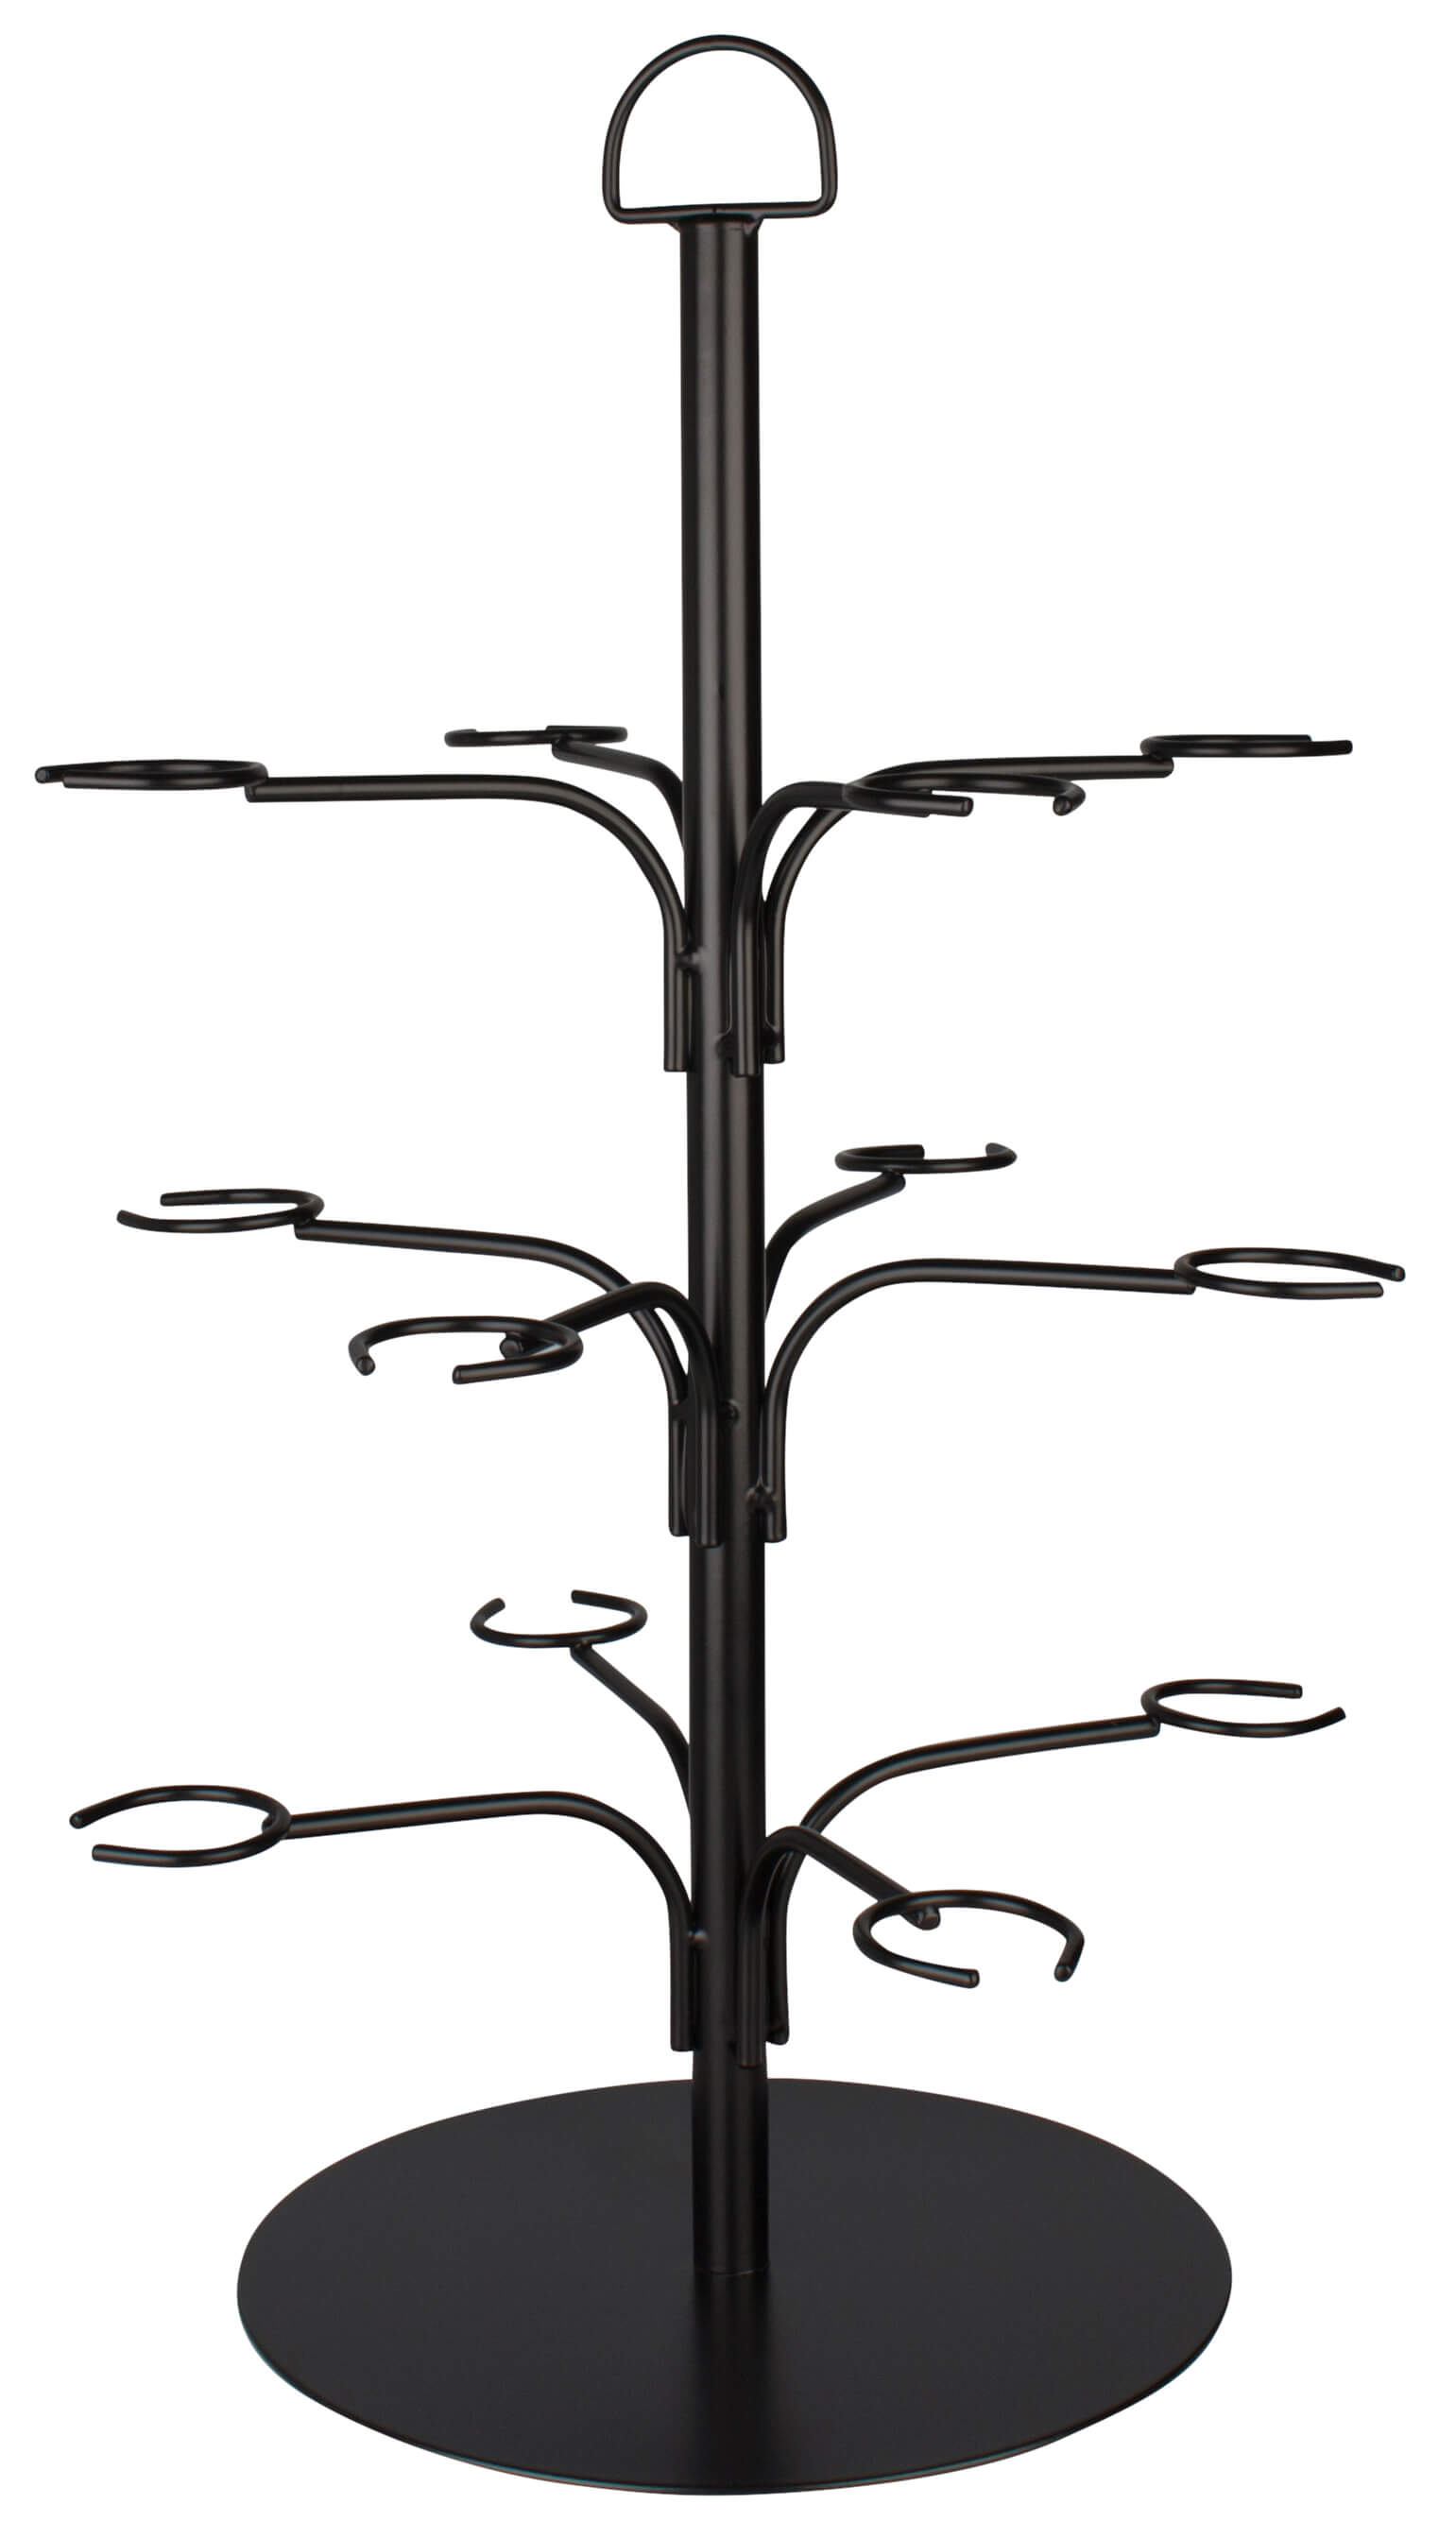 Cocktailbaum für 12 Gläser - schwarz